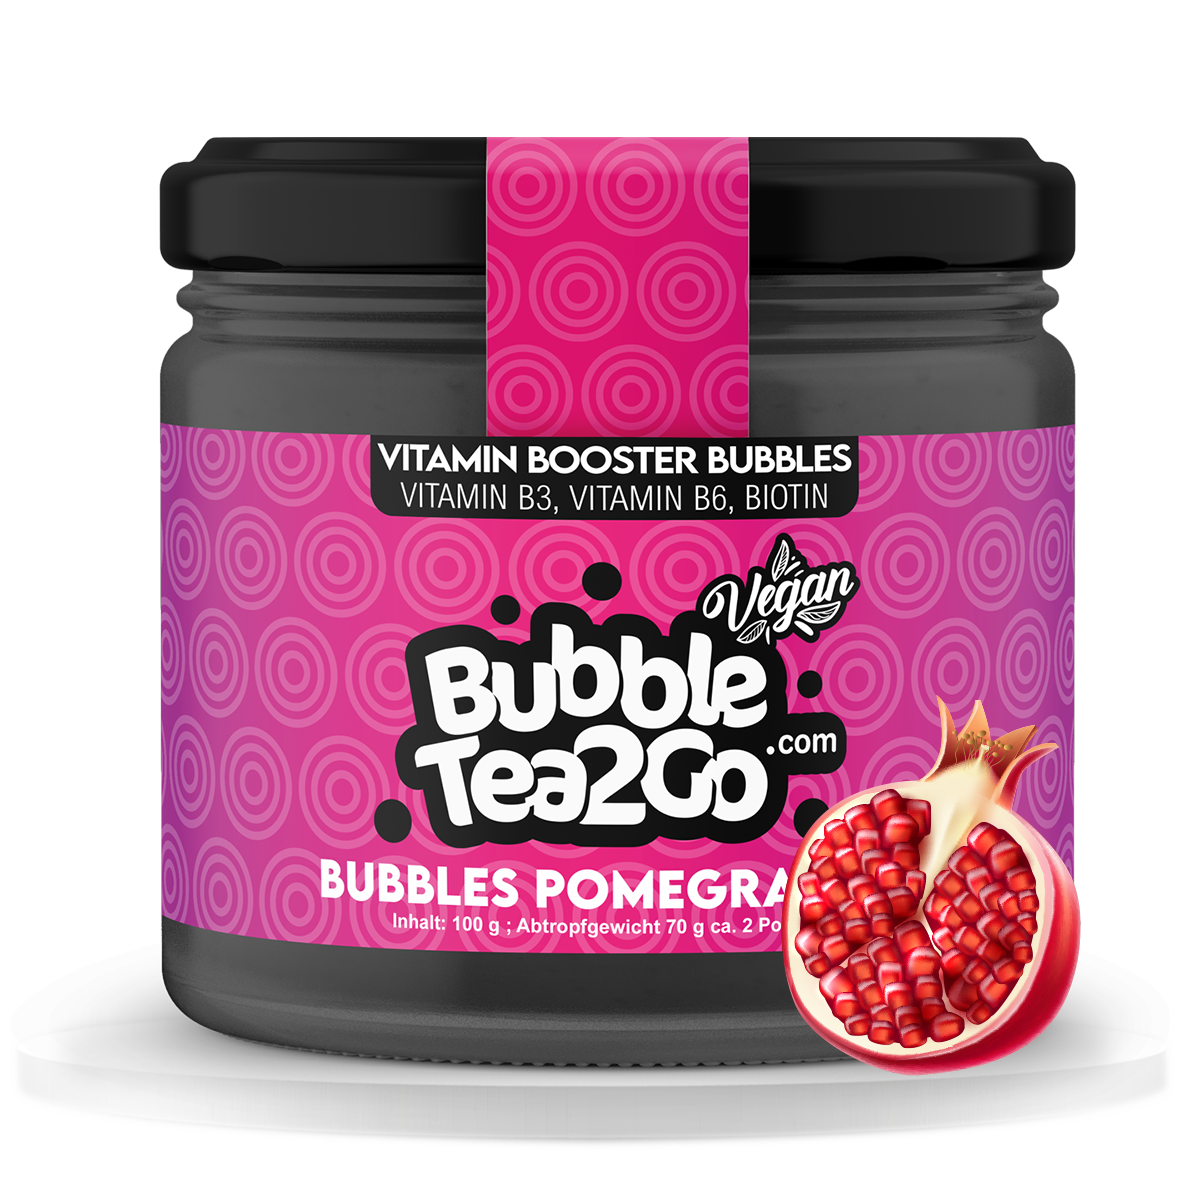 Bubbles - Pomegranate 2 servings (120g)